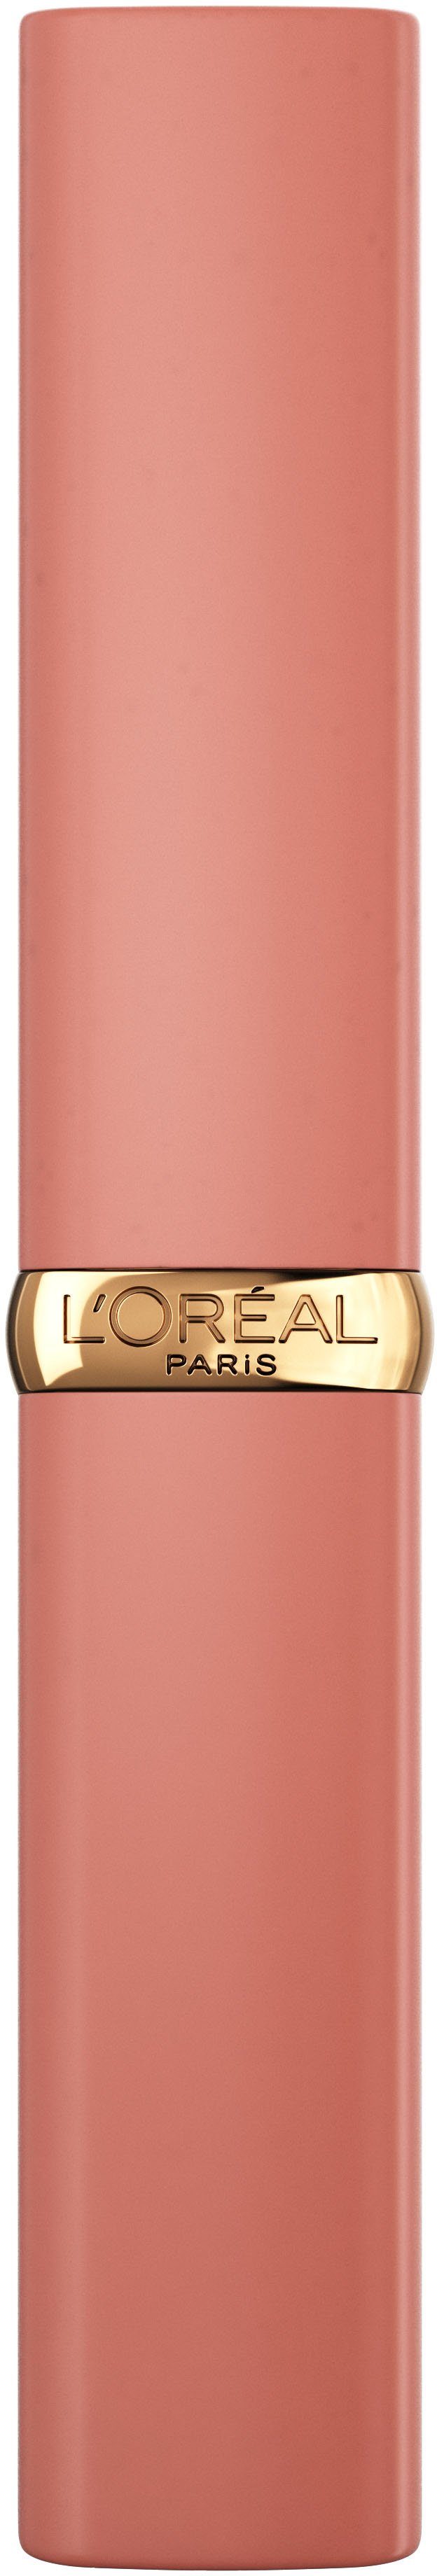 L'ORÉAL PARIS Lippenpflegestift Volume Color Matte Intense Riche